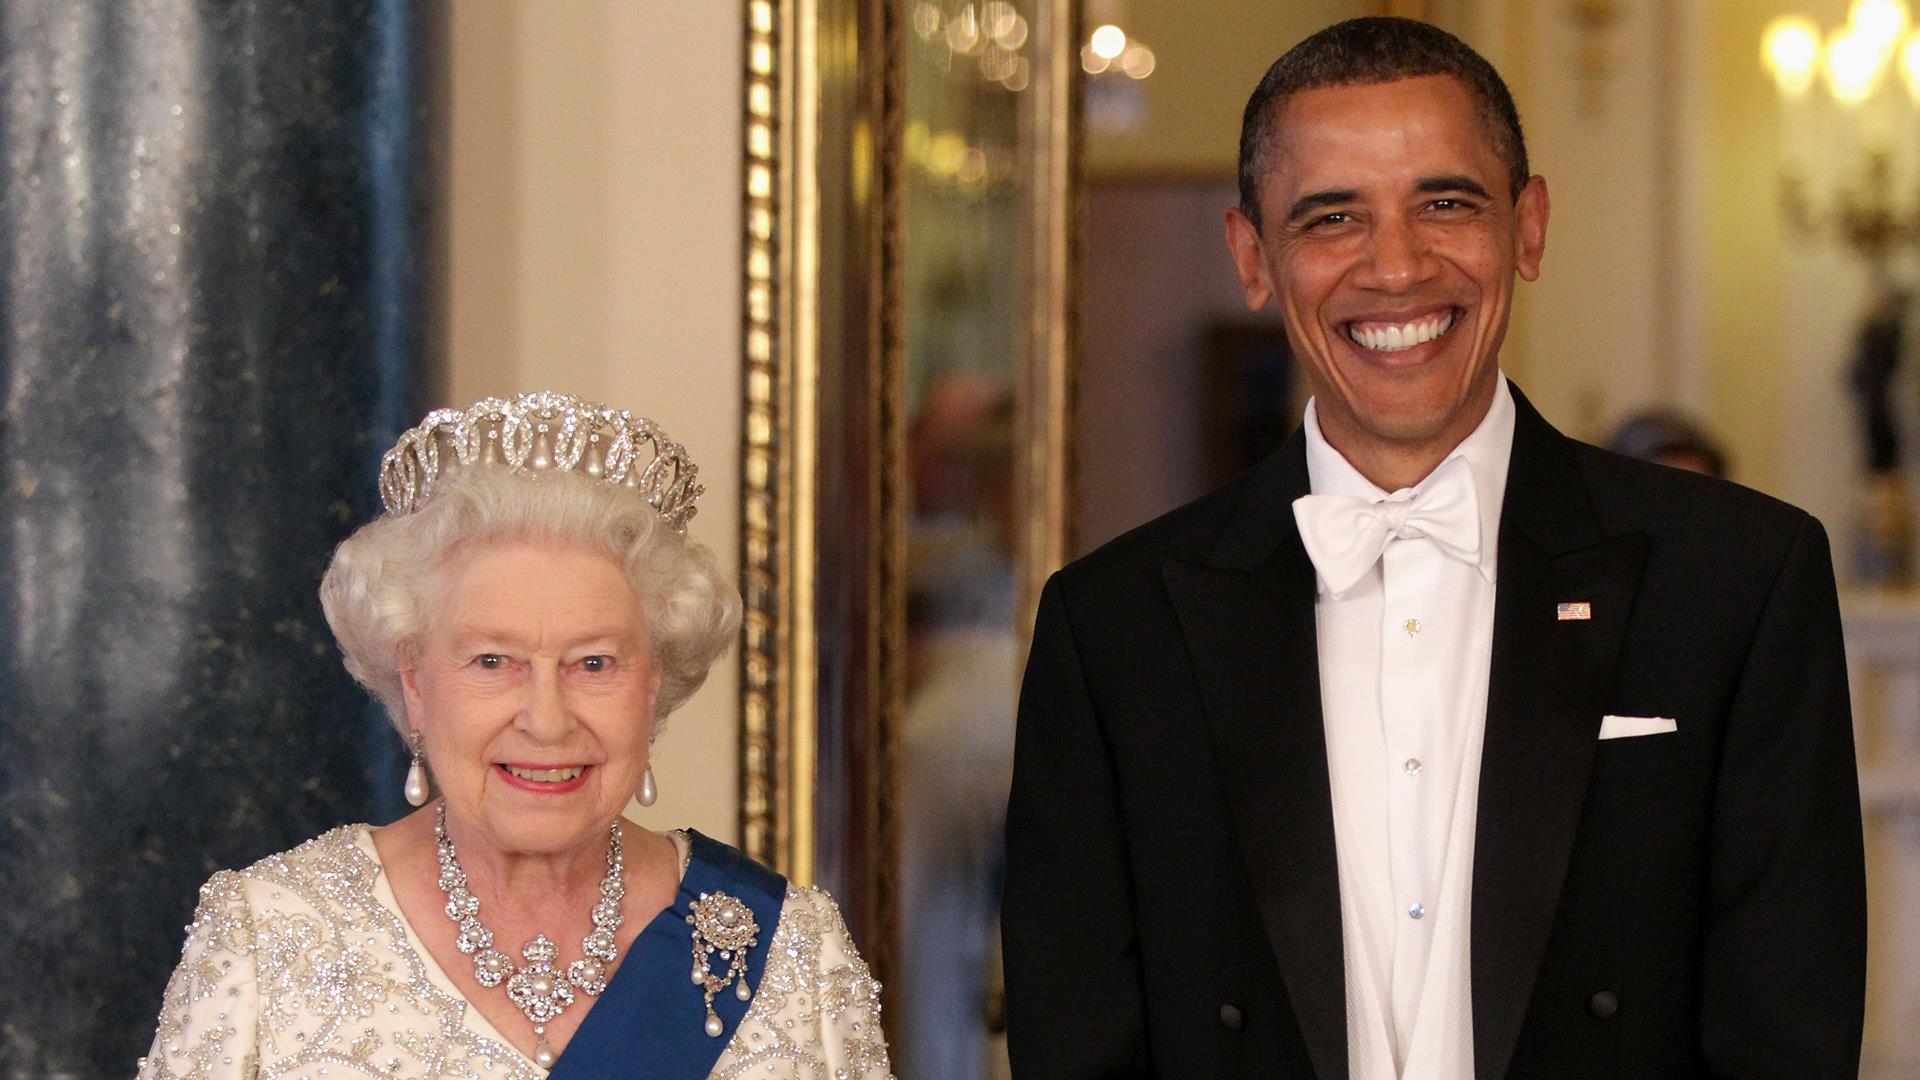 Watch Queen Elizabeth II meet 13 U.S. presidents